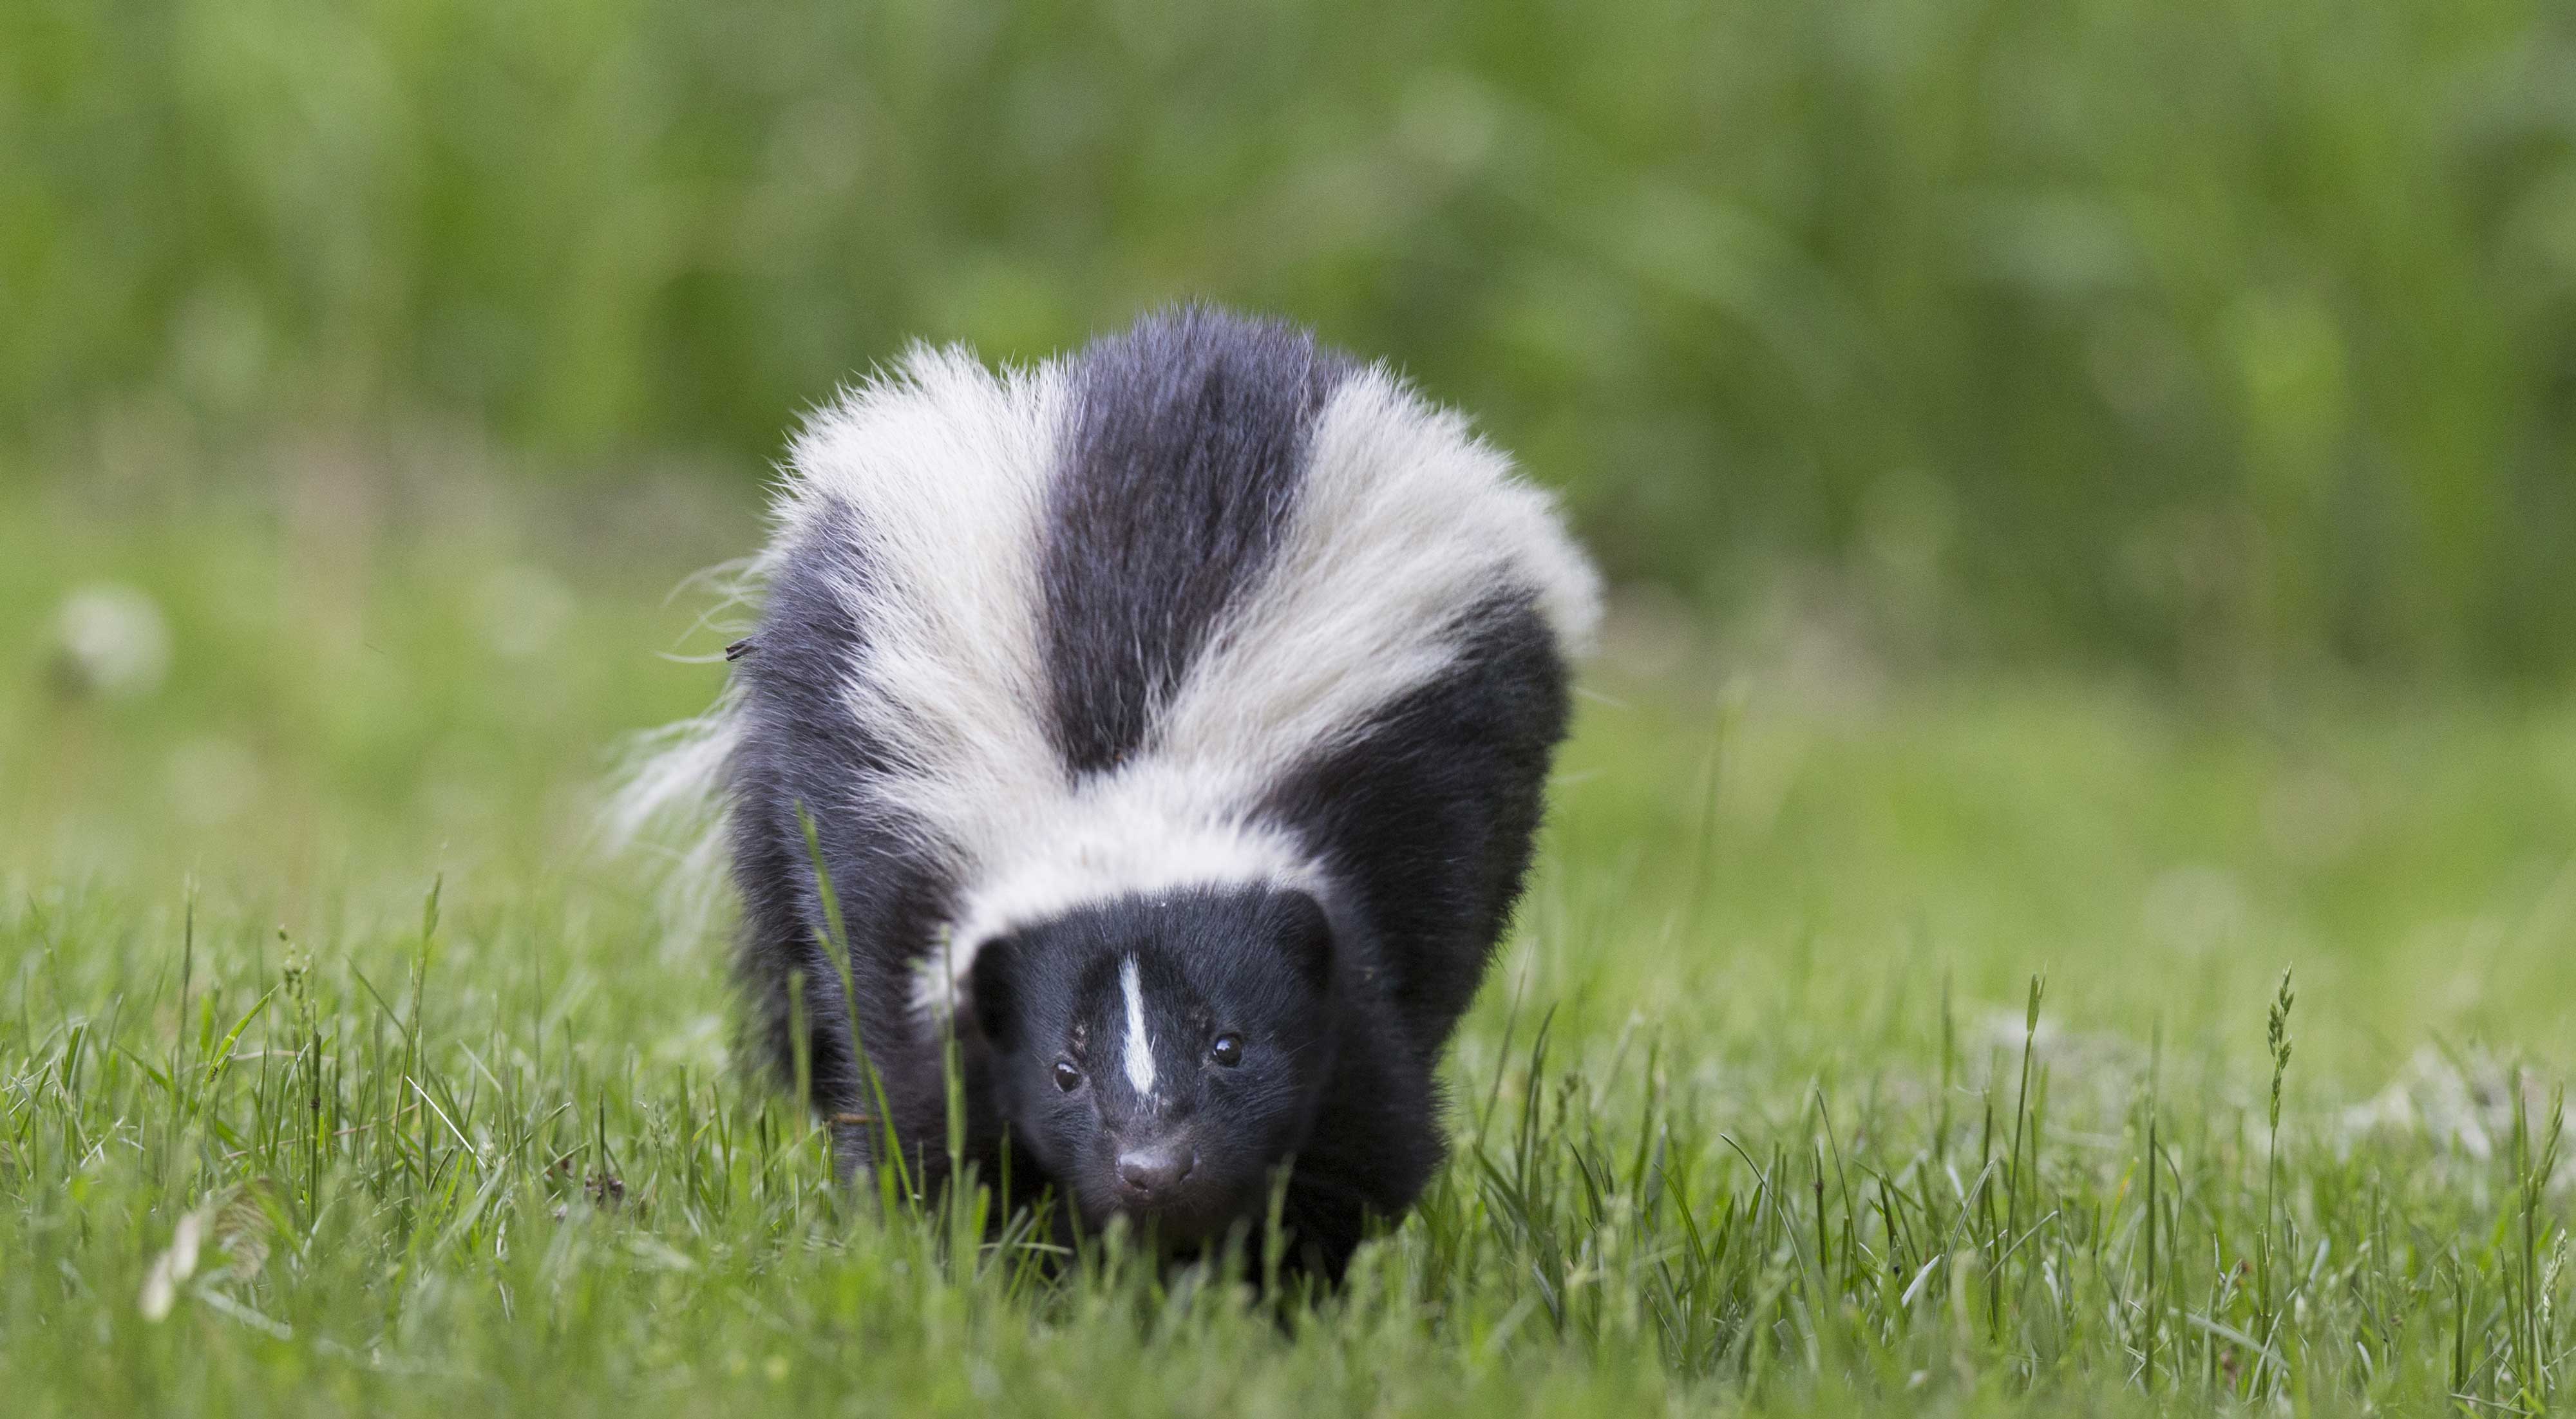 A skunk walking in grass.